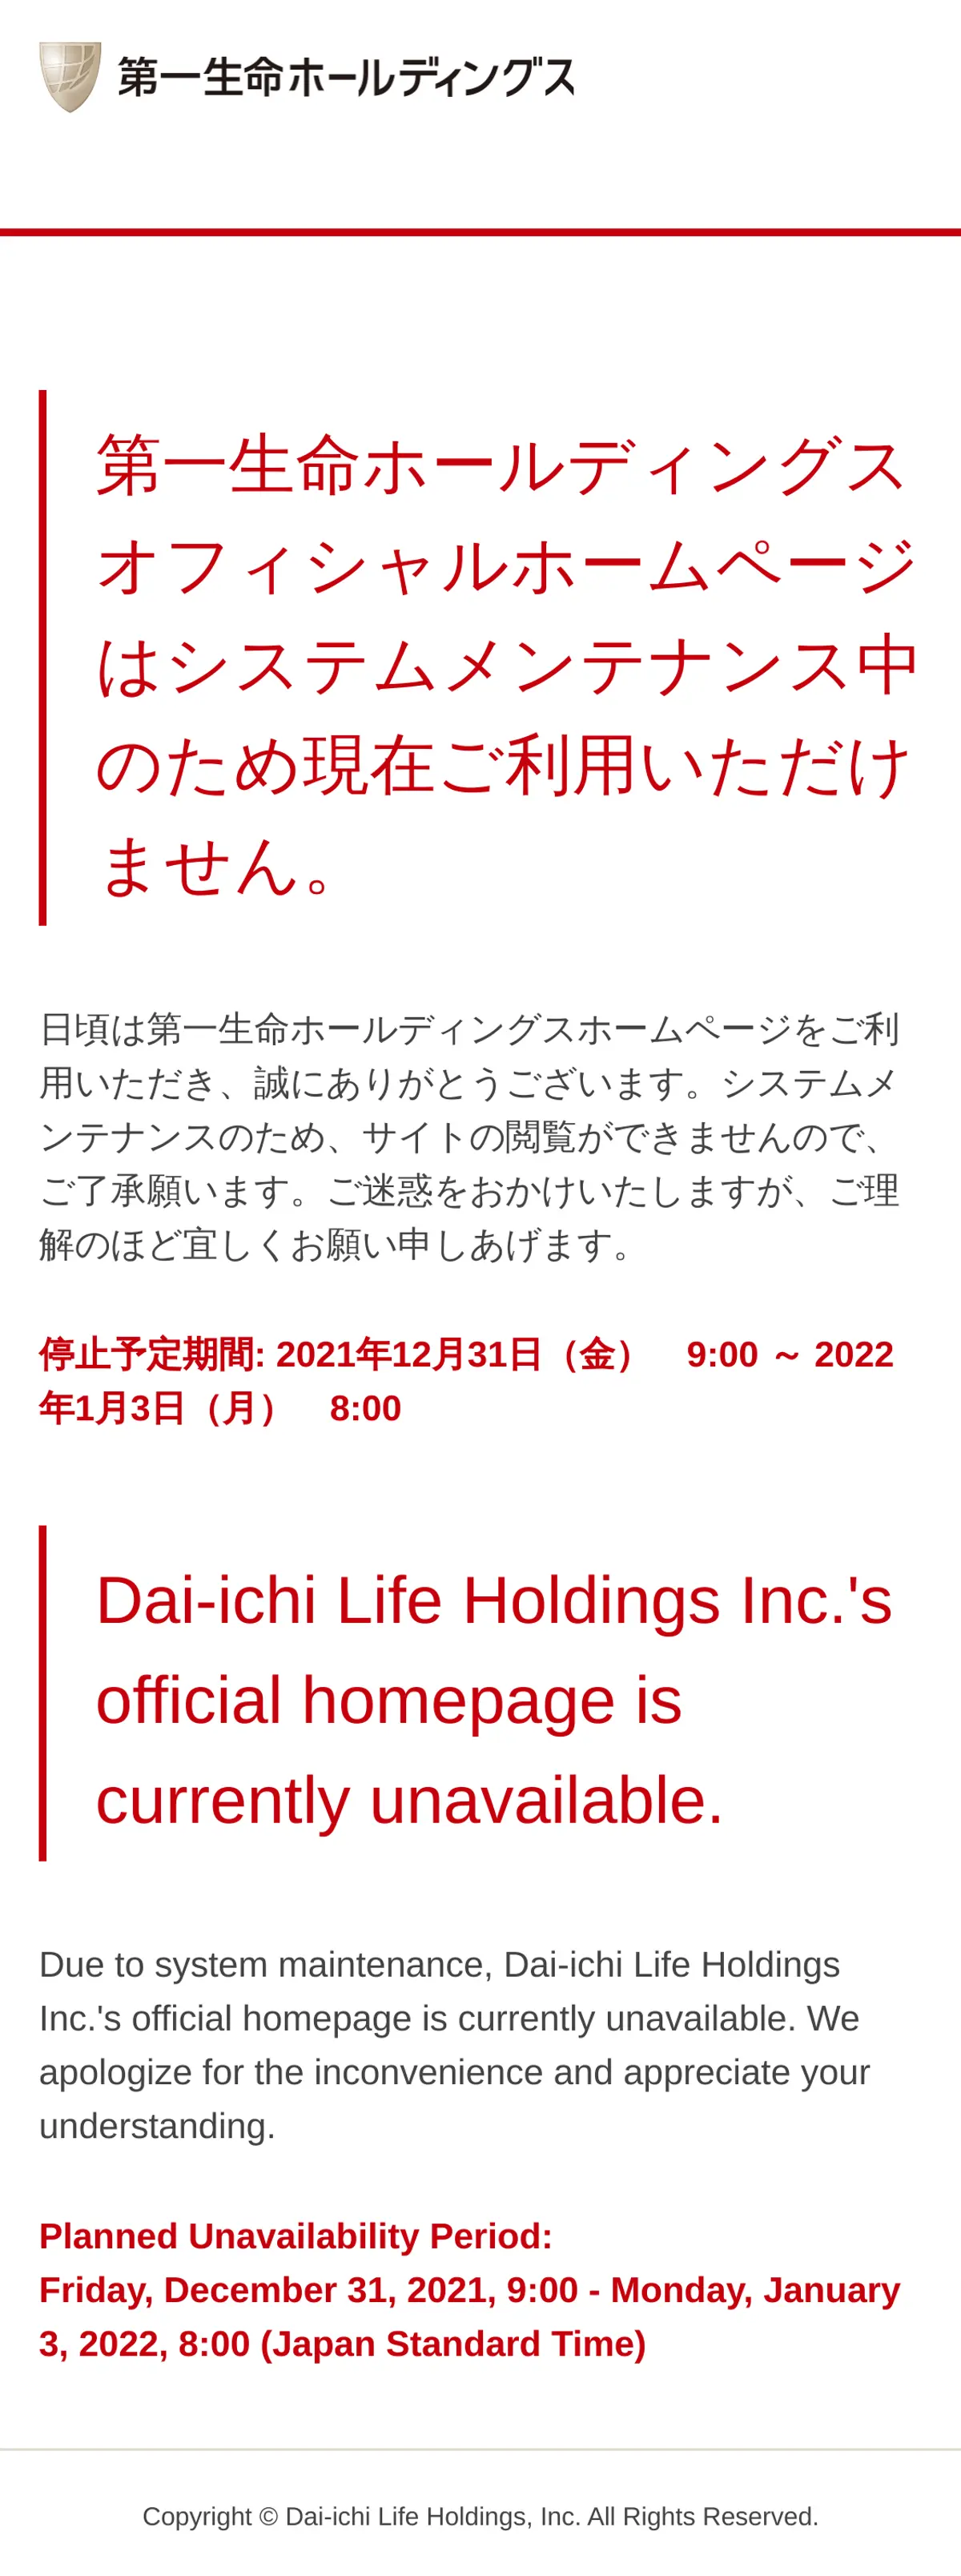 キャプチャ画面 会社名:第一生命ホールディングス株式会社プロジェクト名:Dai-ichi Life Innovation Lab 画面名:A デバイス名:SPカテゴリ:金融・保険タグ:SP,A